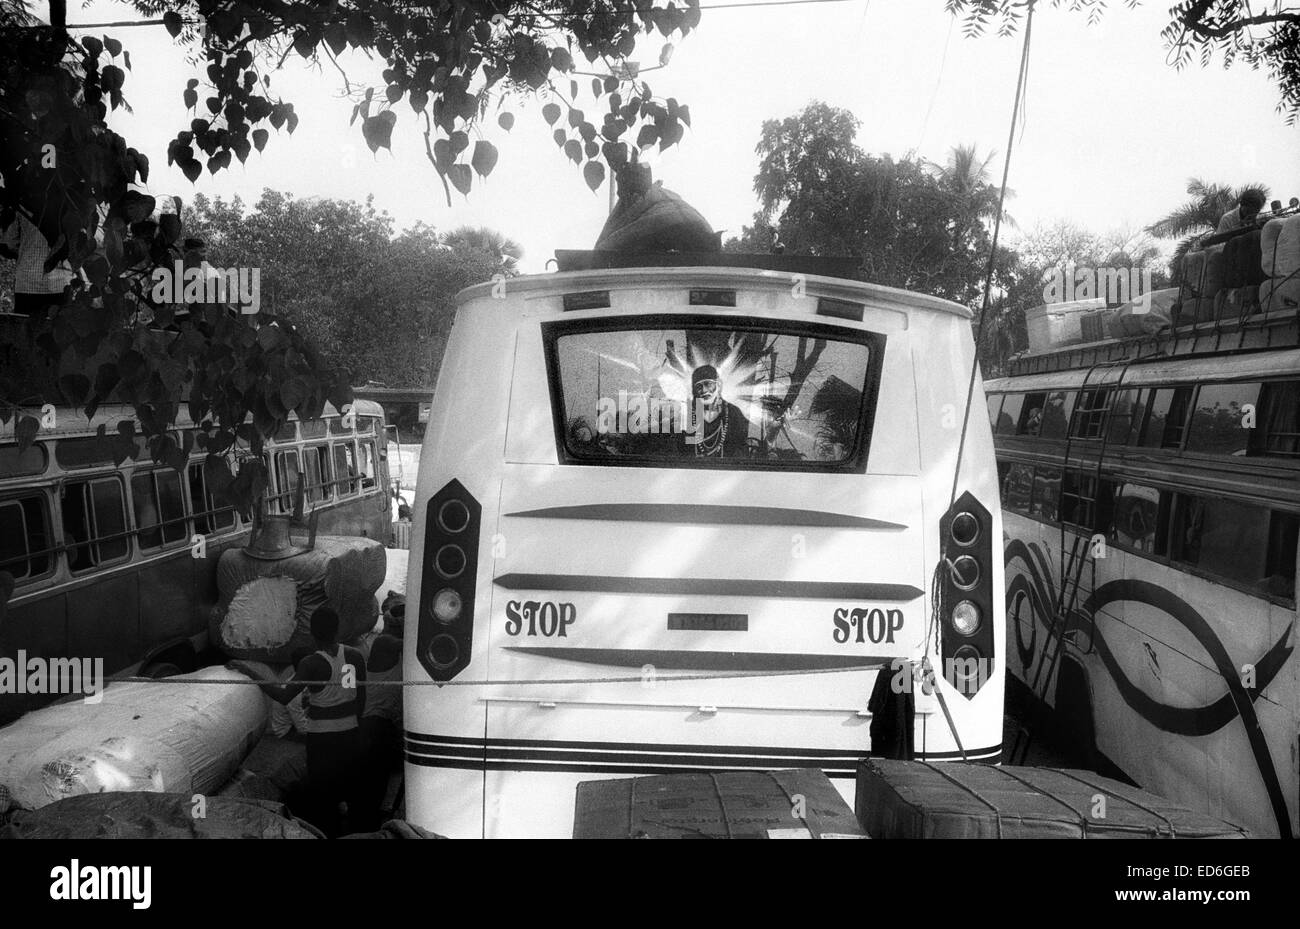 Kalkutta, Westbengalen, Indien. 14. April 2011. Eine religiöse Bild sieht auf der Rückseite eines Busses, der Busbahnhof von Kalkutta abzuweichen. (März 2011) - Kolkata (Kalkutta) ist ein Wendepunkt auf dem indischen Subkontinent. Stadt eine herrliche koloniale Vergangenheit (ehemalige Hauptstadt von Britisch-Indien bis zum dem frühen zwanzigsten Jahrhundert) sieht jetzt wie andere Städte des Landes, Bombay oder Neu-Delhi, mit der Wirtschaft des Landes wachsen. In der Zwischenzeit bleibt die bengali Stadt verbunden, um das Stigma der Armut und Unterentwicklung seit dem Niedergang der Wirtschaft in den Jahren nach der Unabhängigkeit Indiens. Es ist auch con Stockfoto